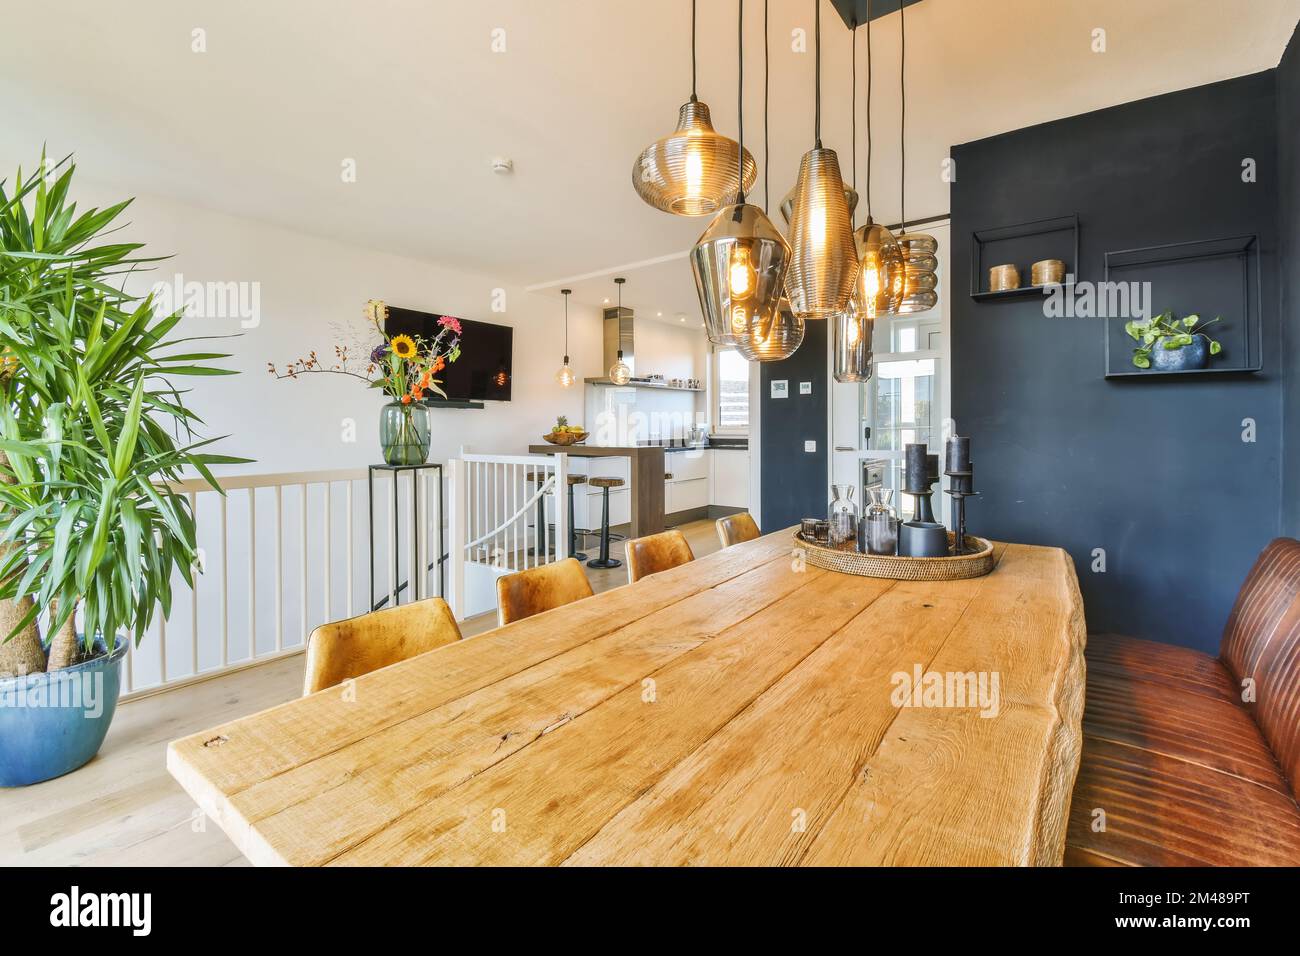 Ein Esszimmer mit einem Holztisch und einigen Pflanzen in Töpfen an der Wand neben der Küche ist dunkelblau Stockfoto